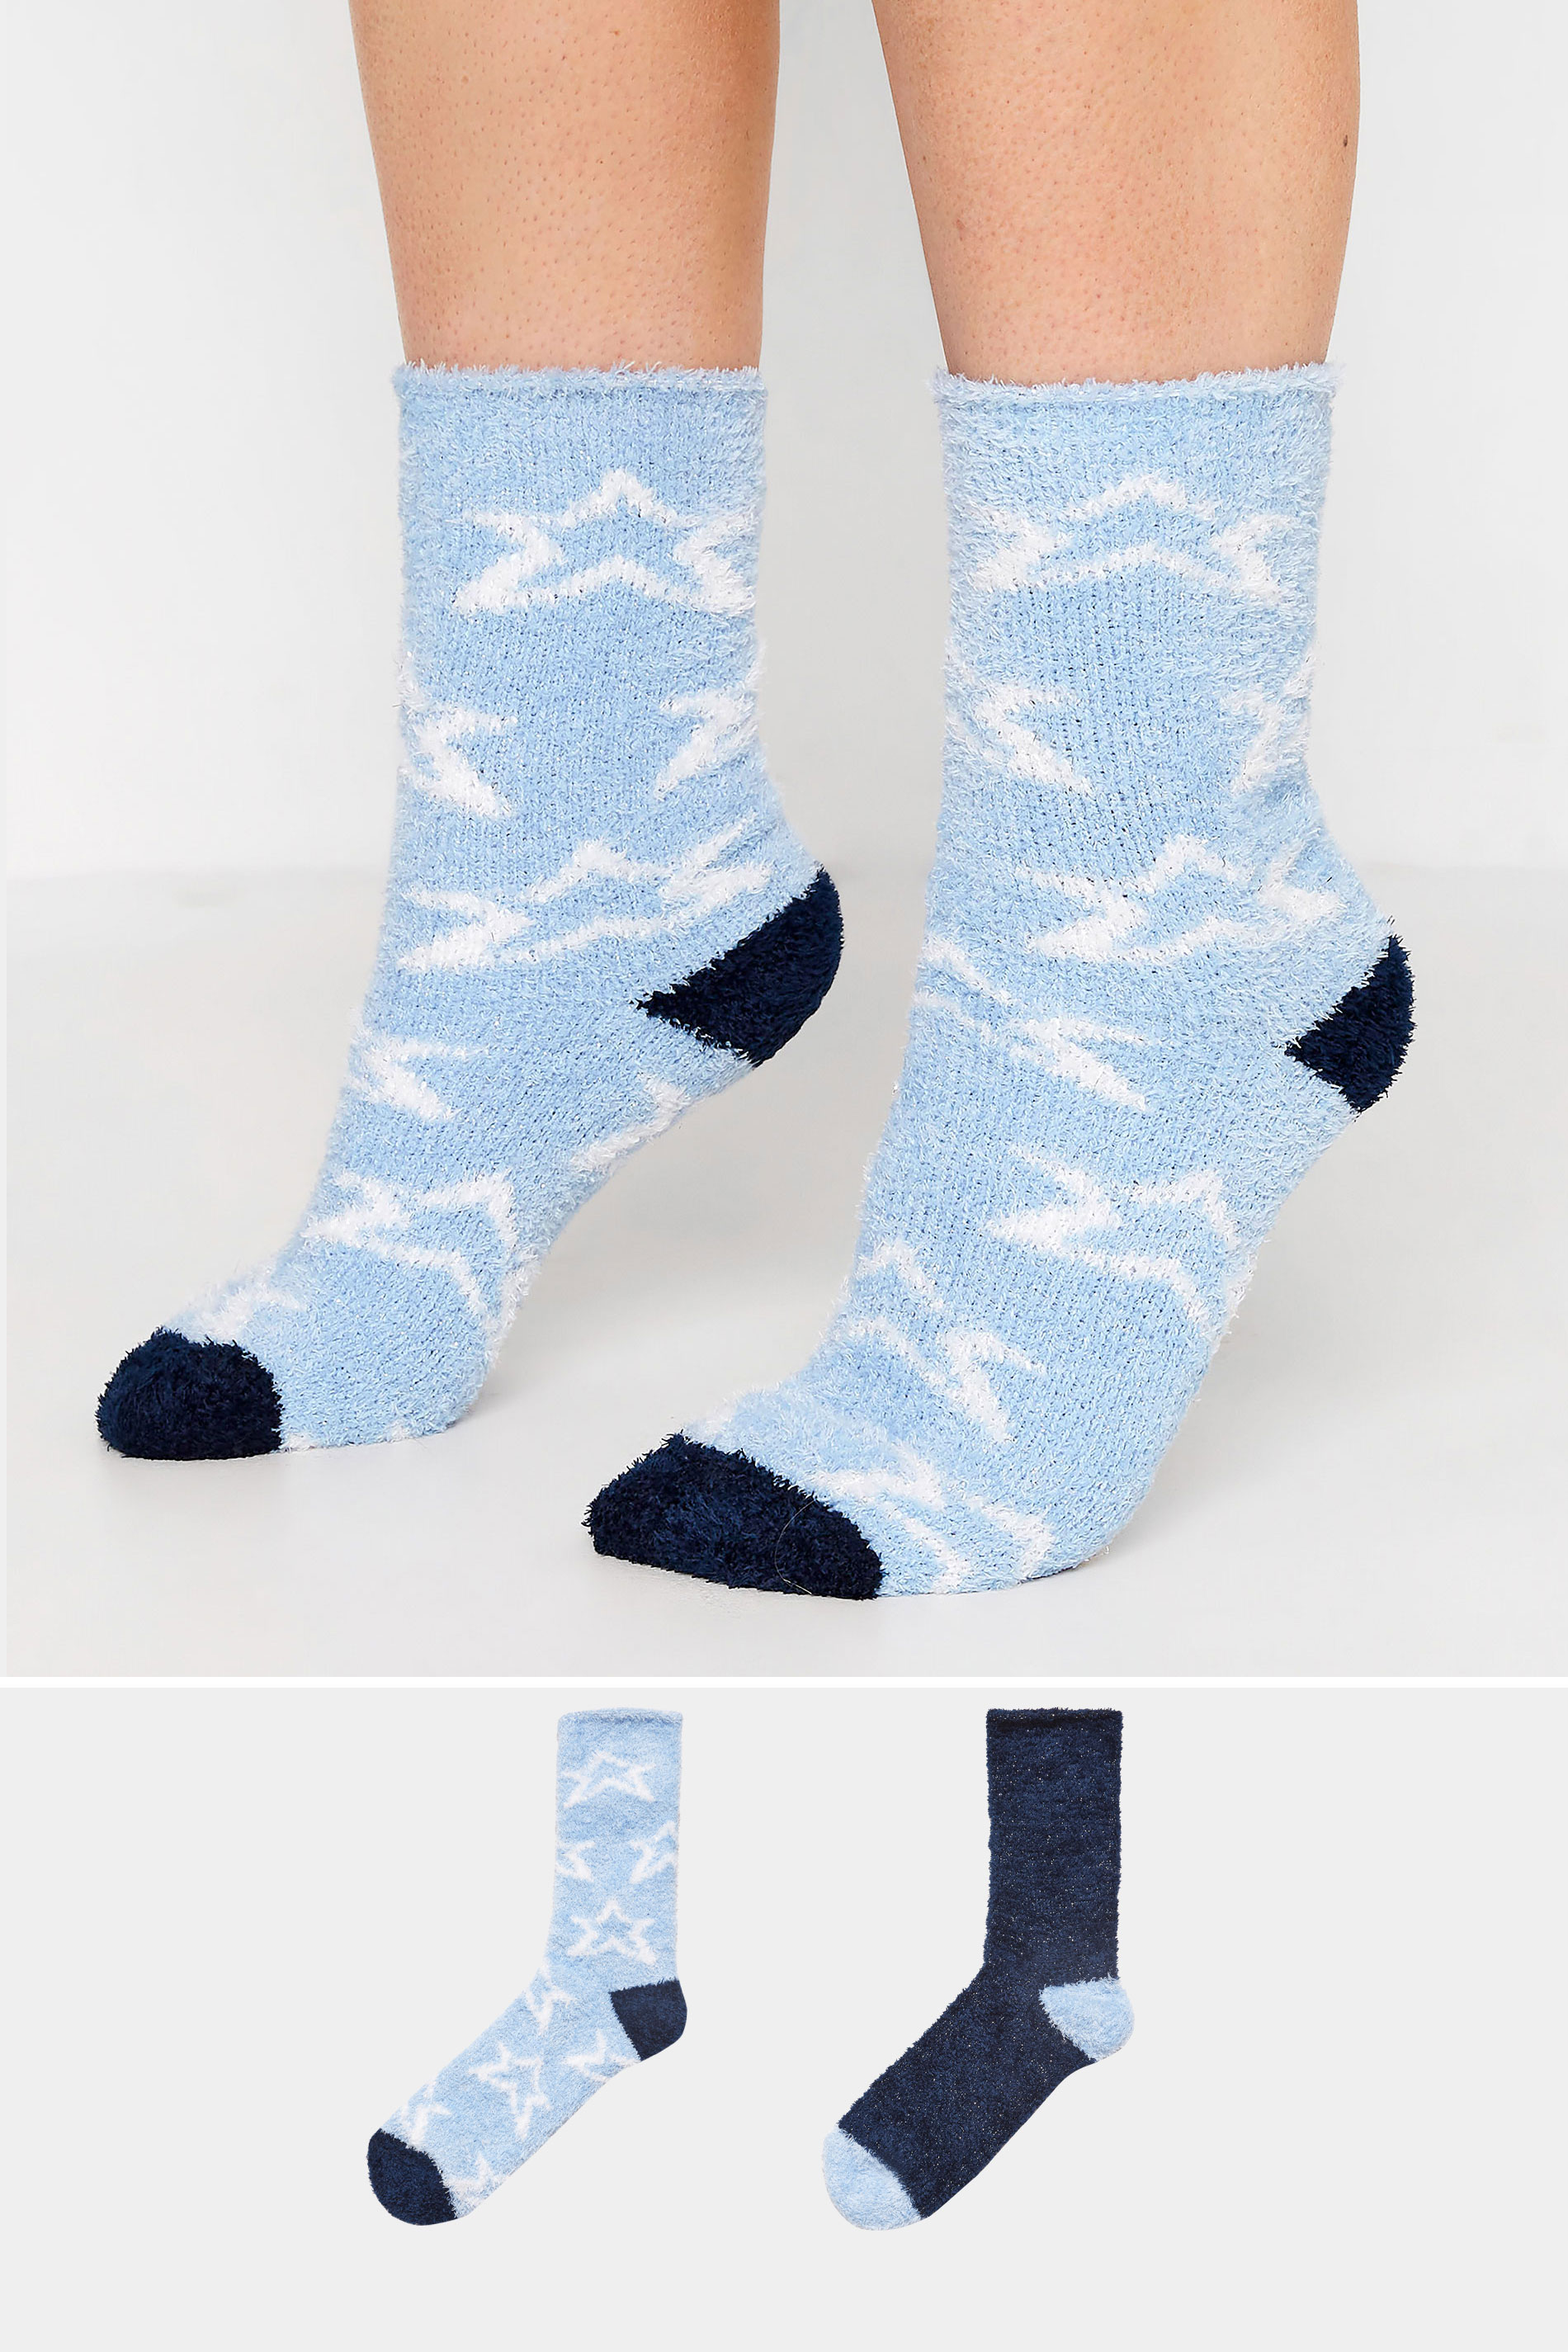 2 PACK Blue Metallic Star Print Fluffy Ankle Socks_MS.jpg